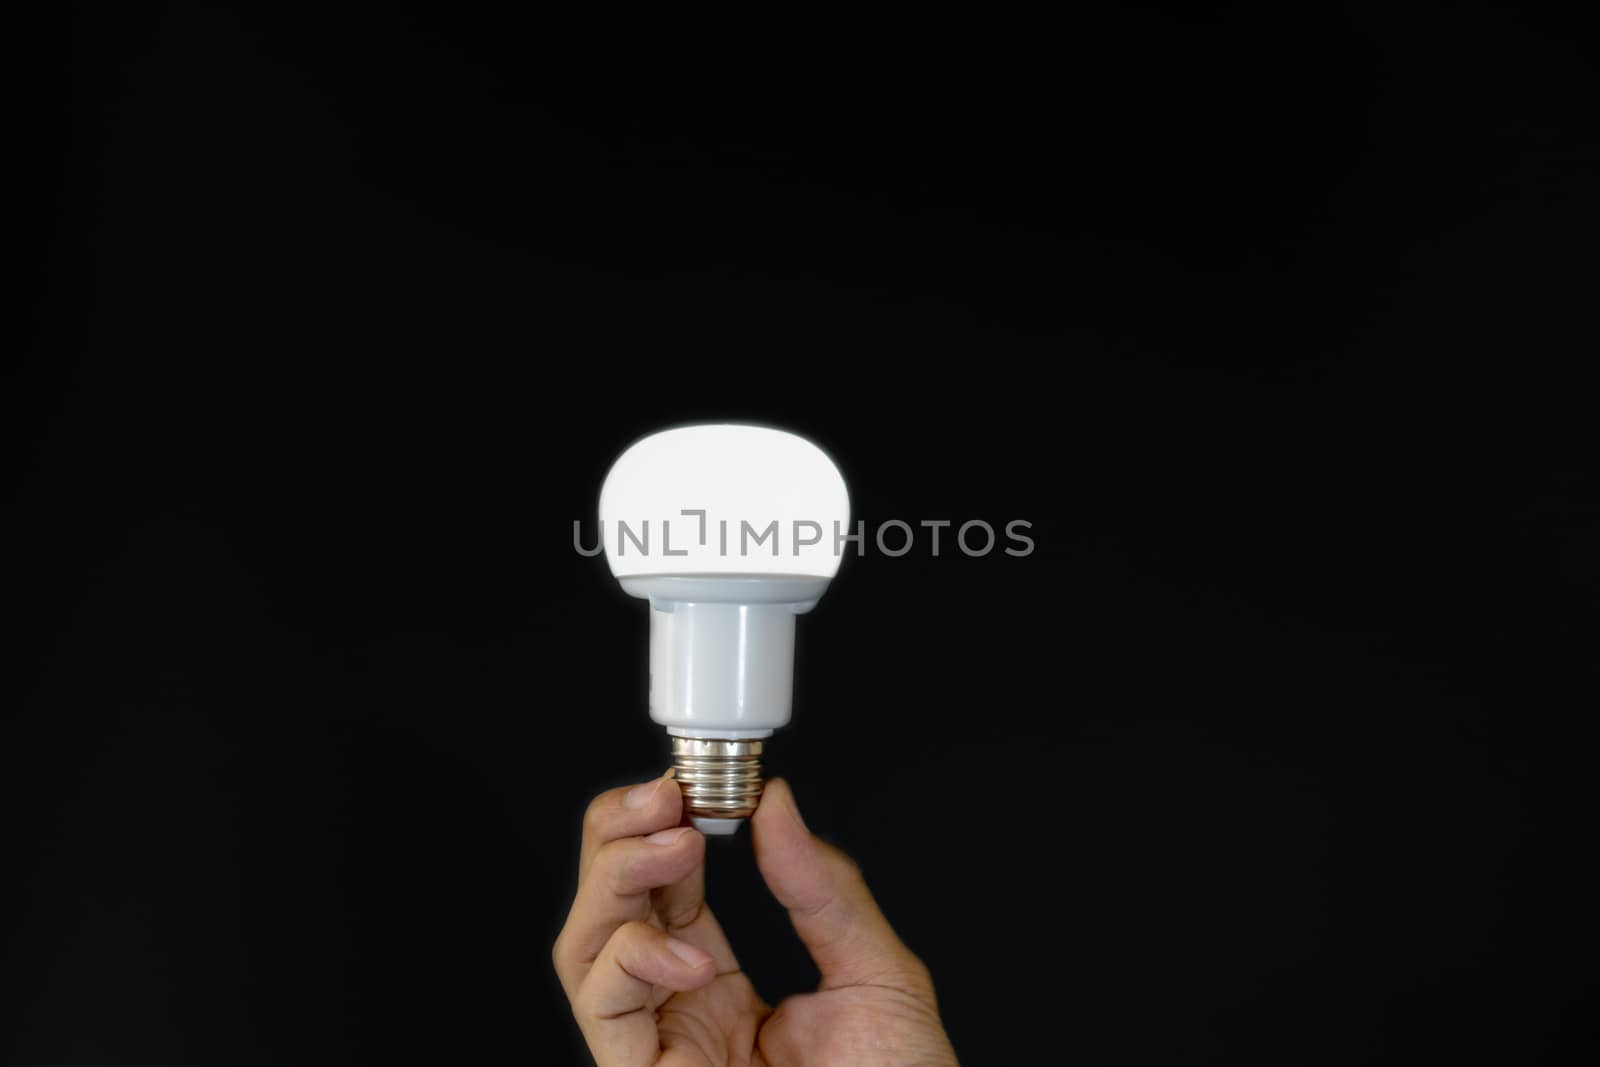 Hand holding LED light bulb over black background.